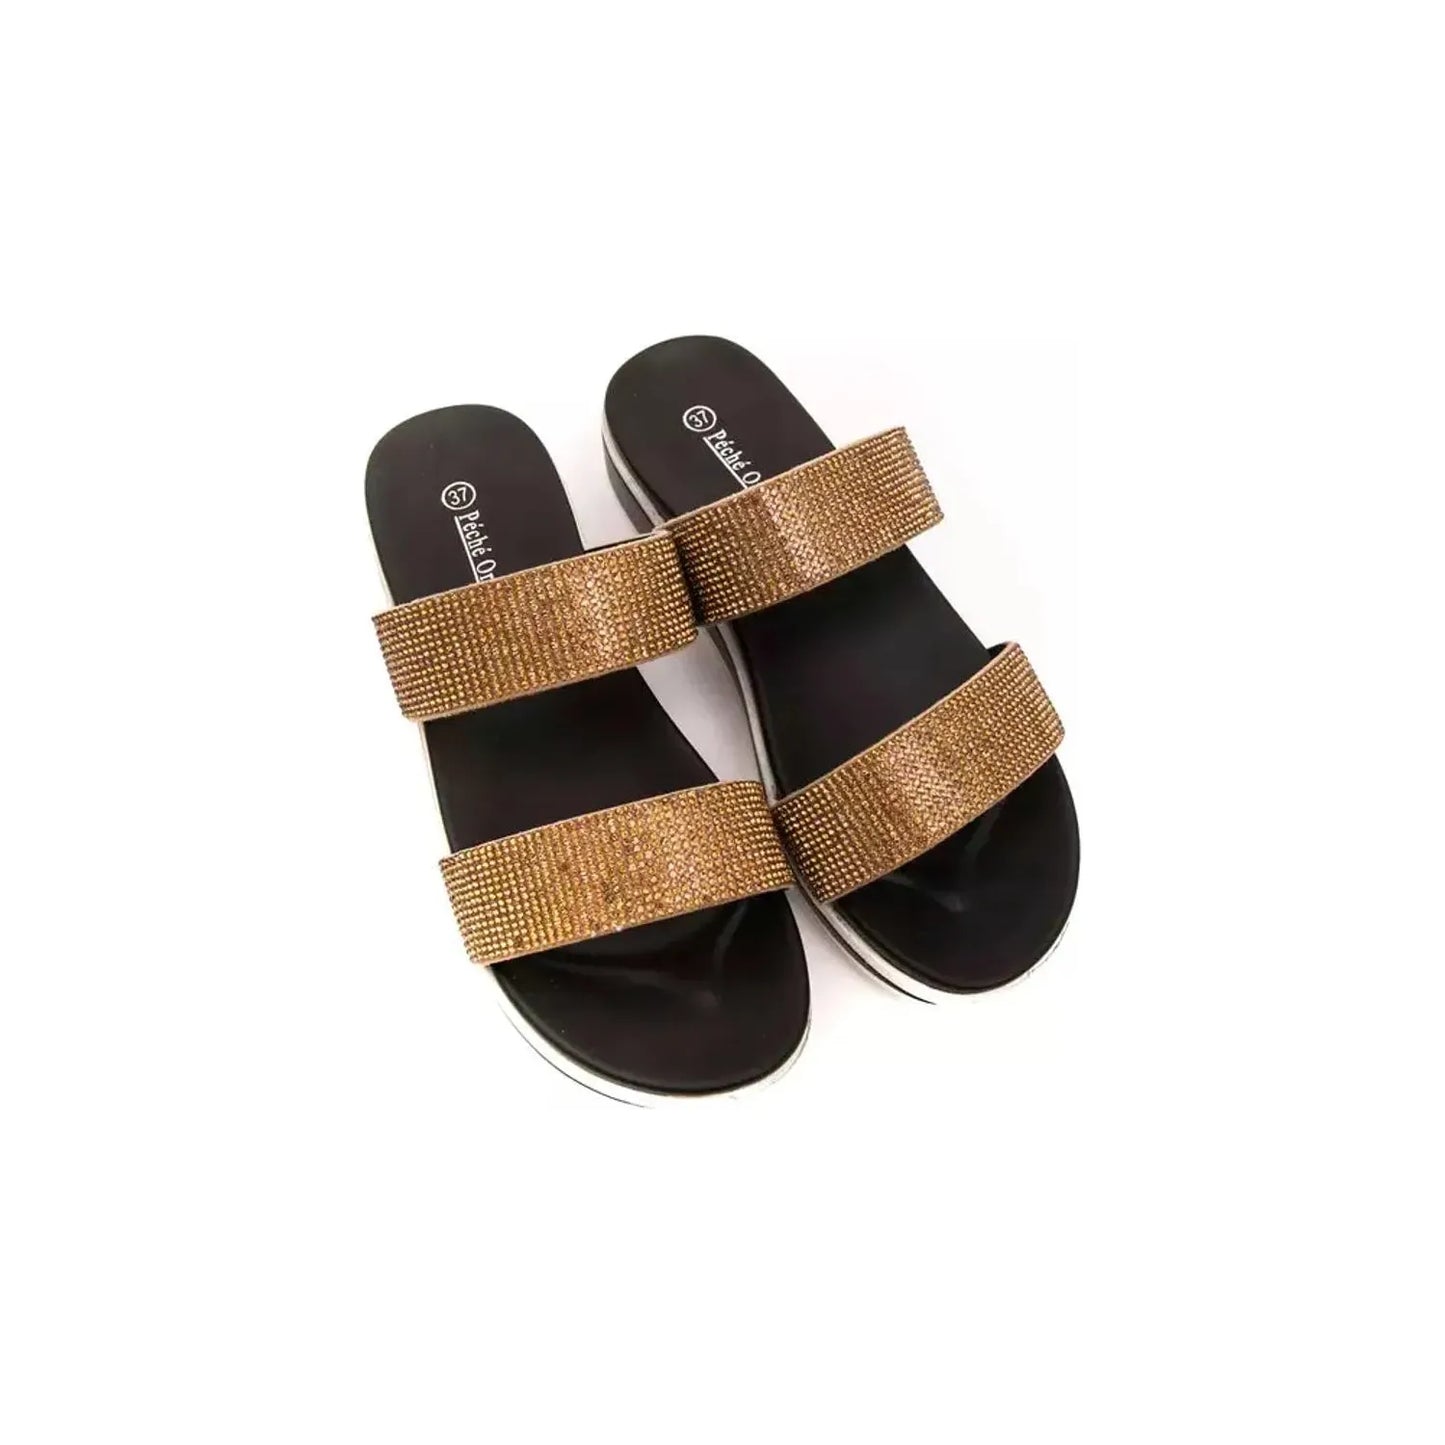 Péché Originel Beige Dual-Strap Rhinestone Sandals WOMAN SANDALS beige-textile-sandal stock_product_image_18722_1233102134-16-8e41ddea-8a6.webp